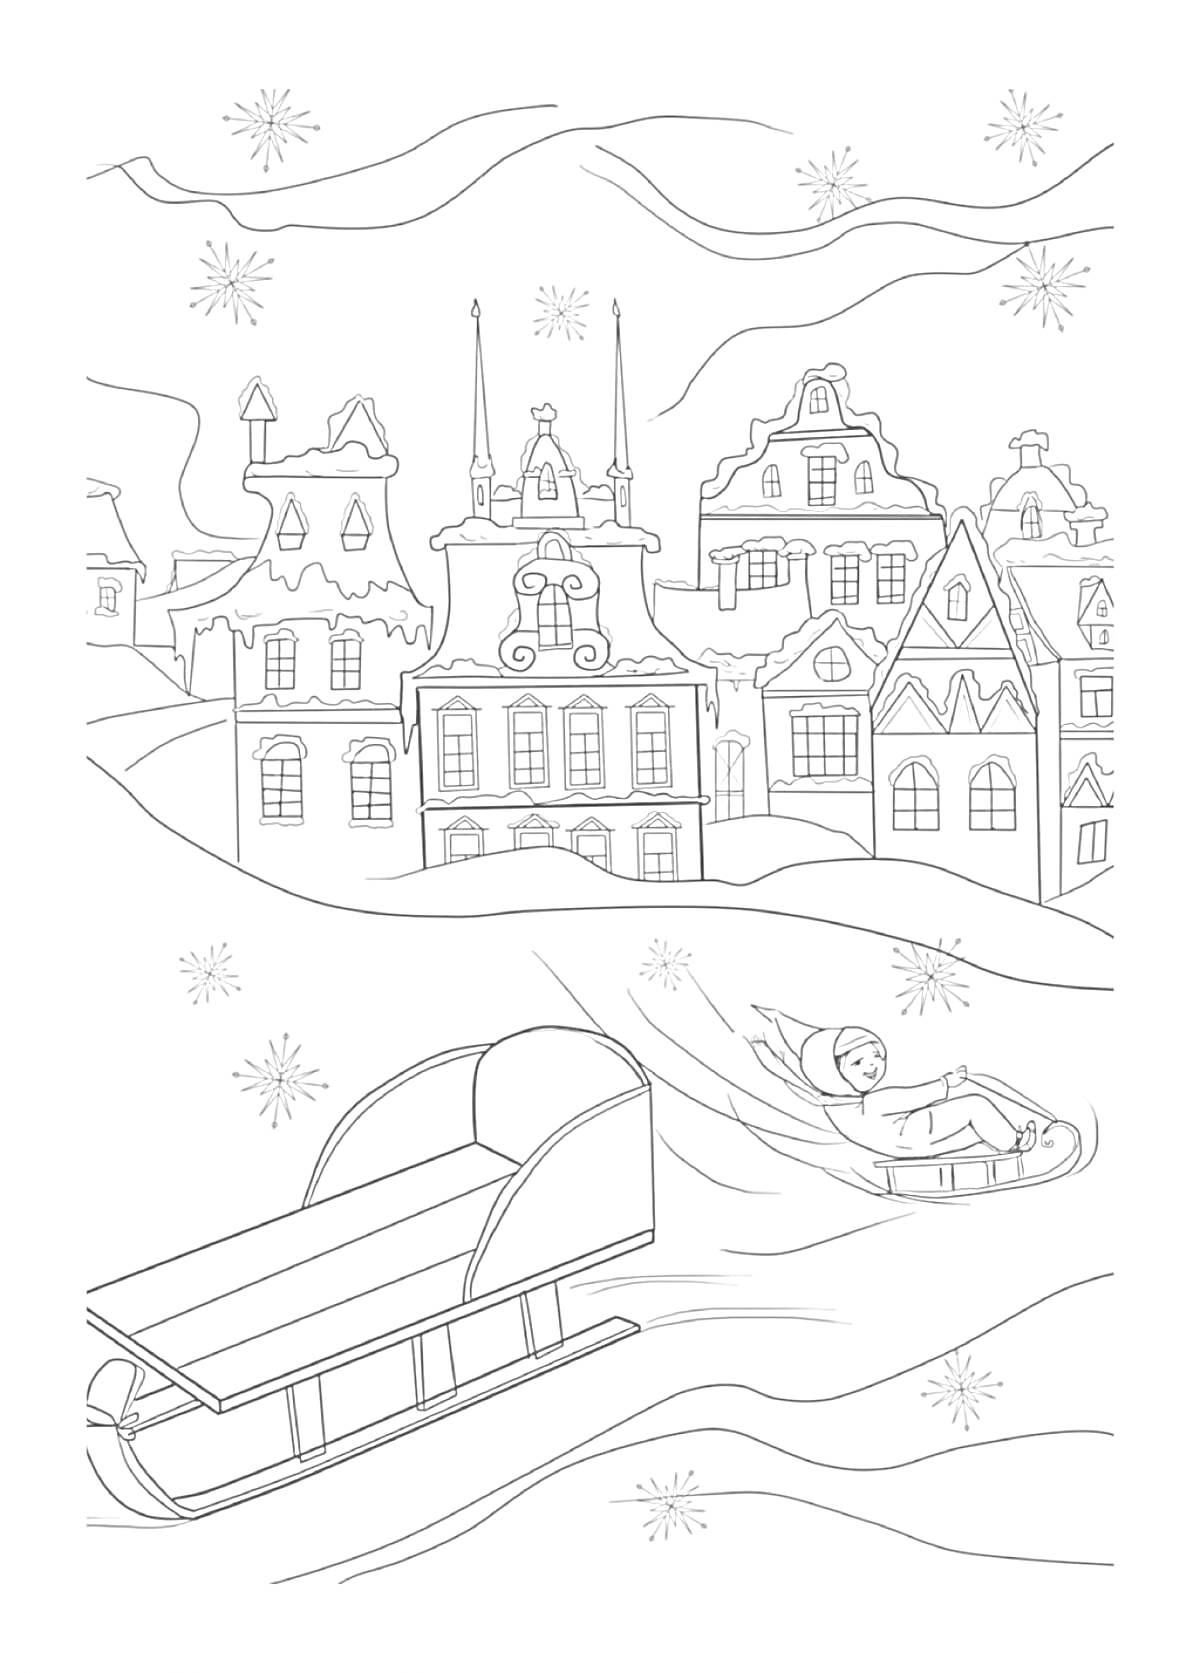 Раскраска Зимний город с домами и девочкой на санках